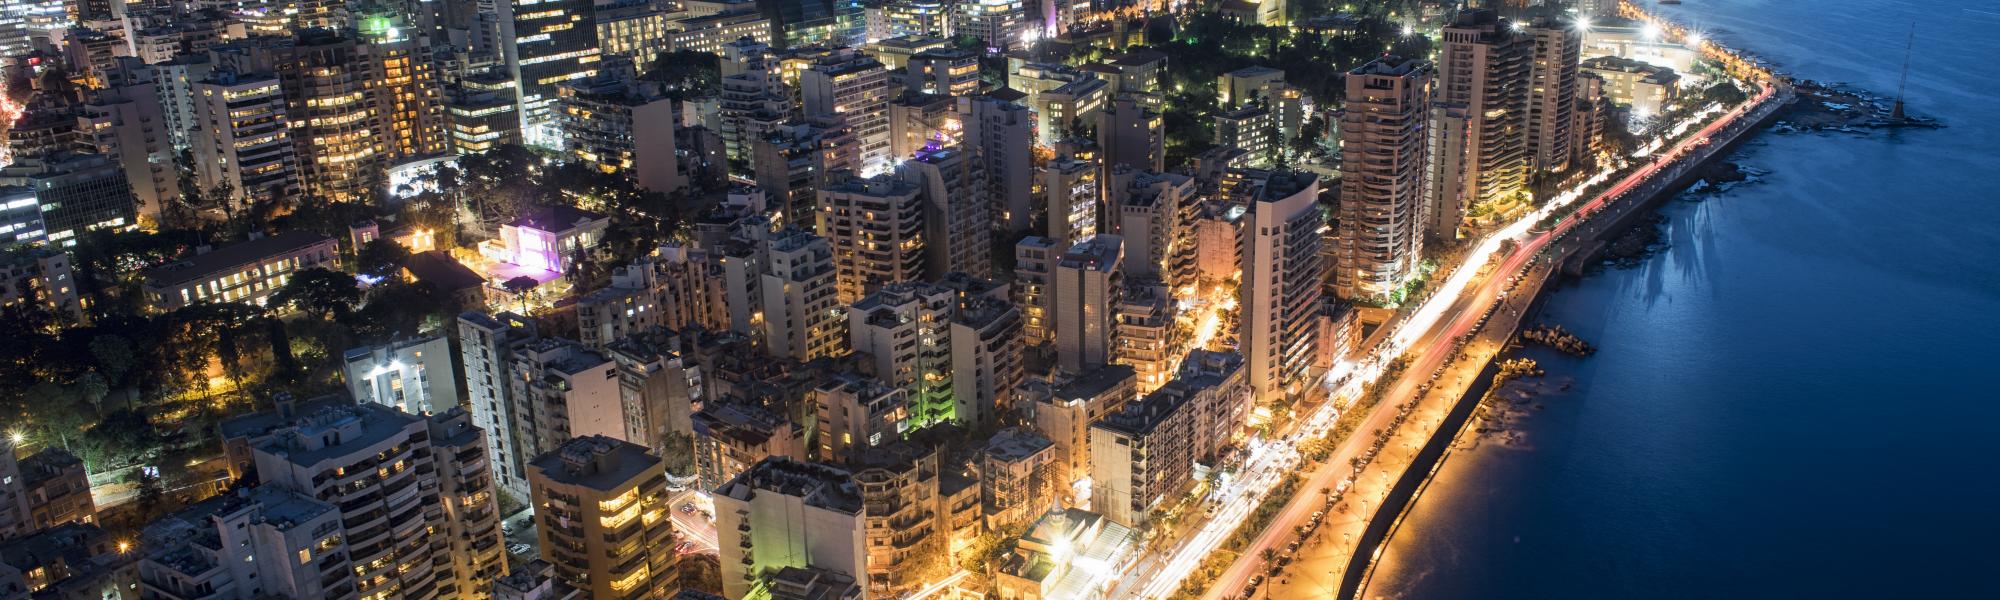 Beirut at night